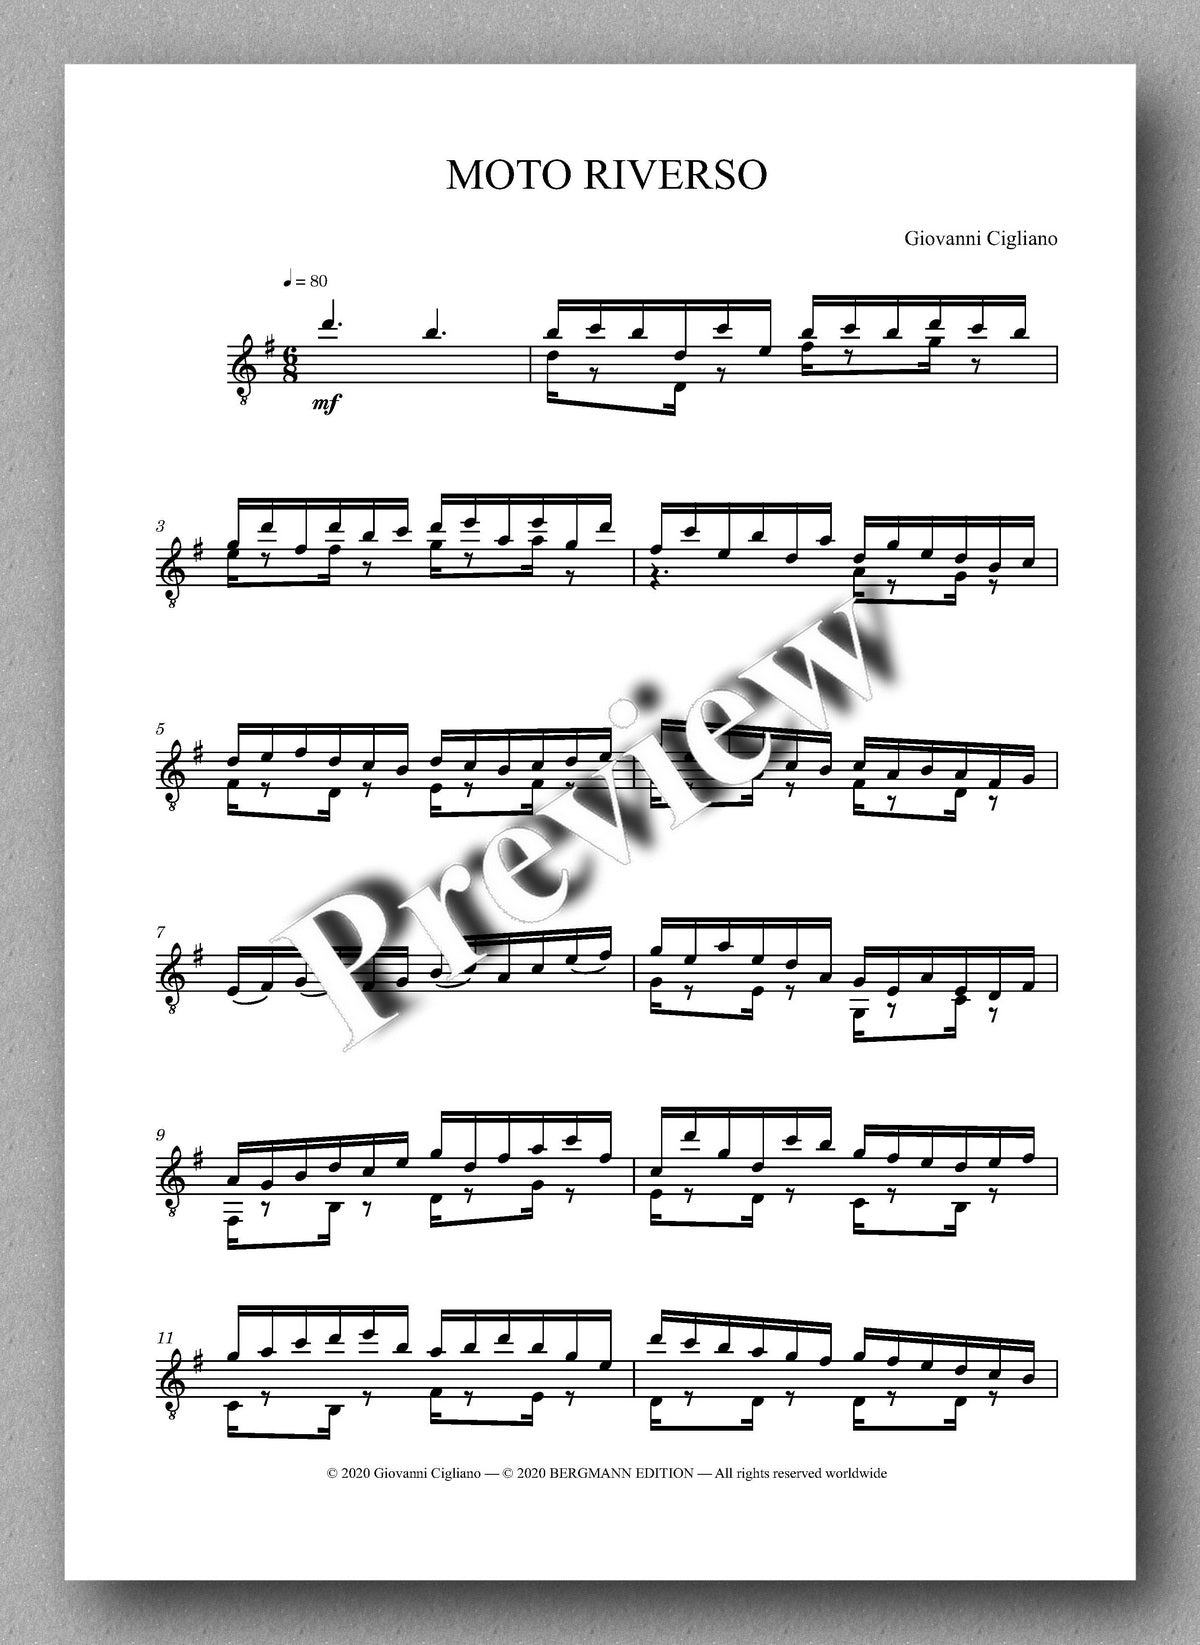 Giovanni Cigliano, Moto Riverso - preview of the music  score